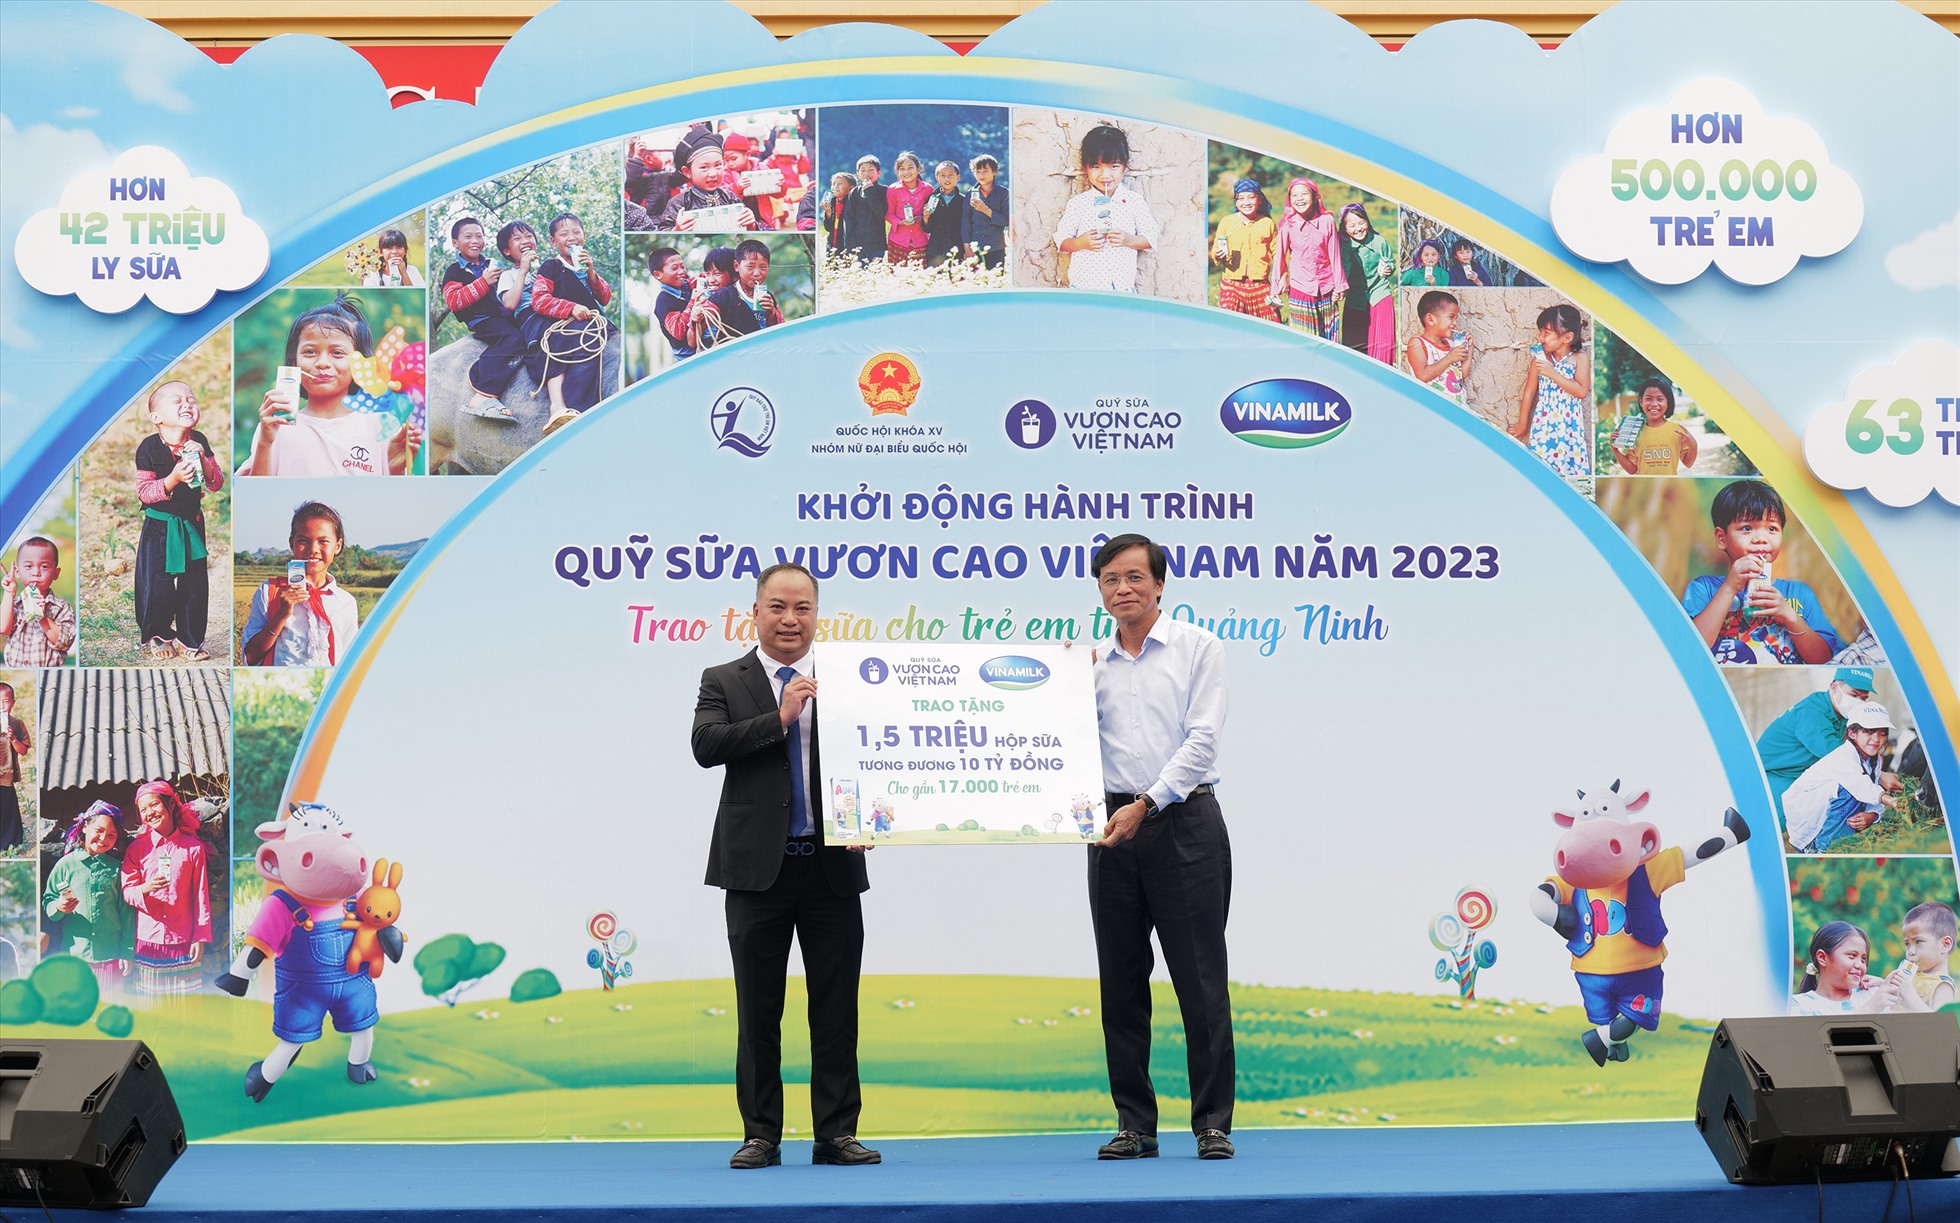 Ông Nguyễn Hạnh Phúc – Chủ tịch Hội đồng Quản trị Vinamilk (bên phải) trao bảng tượng trưng 1,5 triệu ly sữa của chương trình năm 2023 cho lãnh đạo Quỹ BTTEVN. Ảnh: Vinamilk